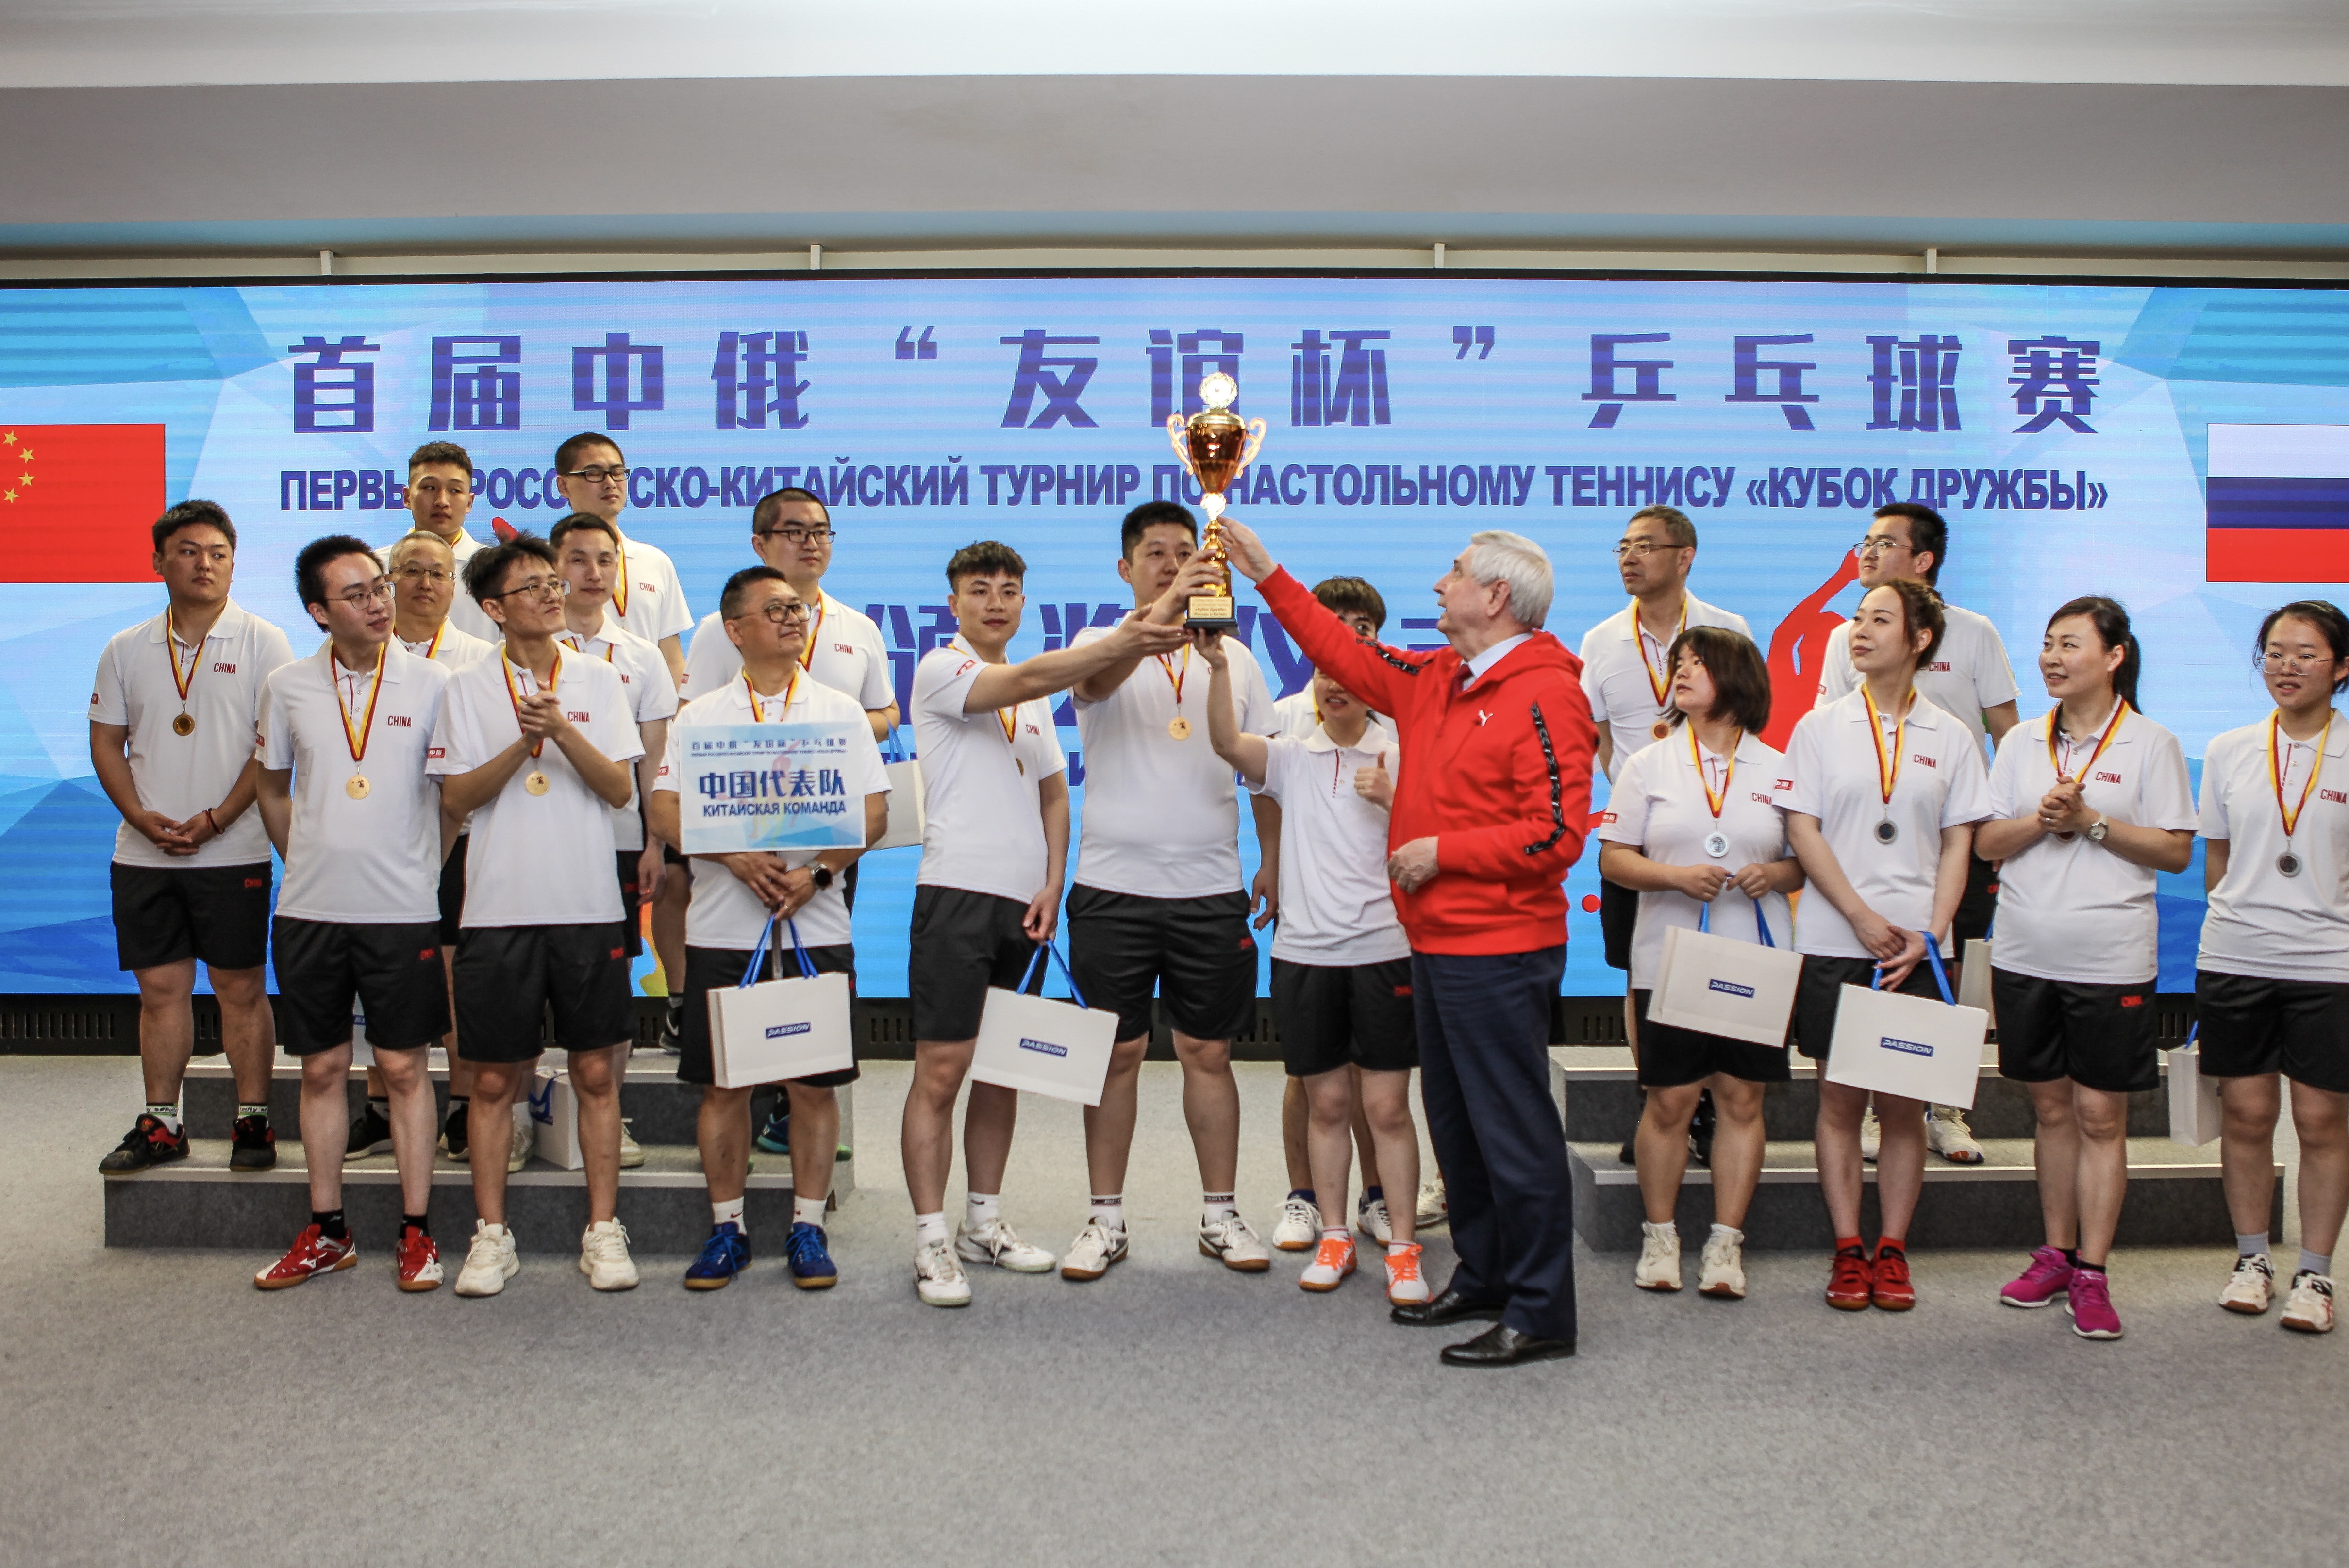 Первый российско-китайский турнир по настольному теннису «Кубок дружбы»